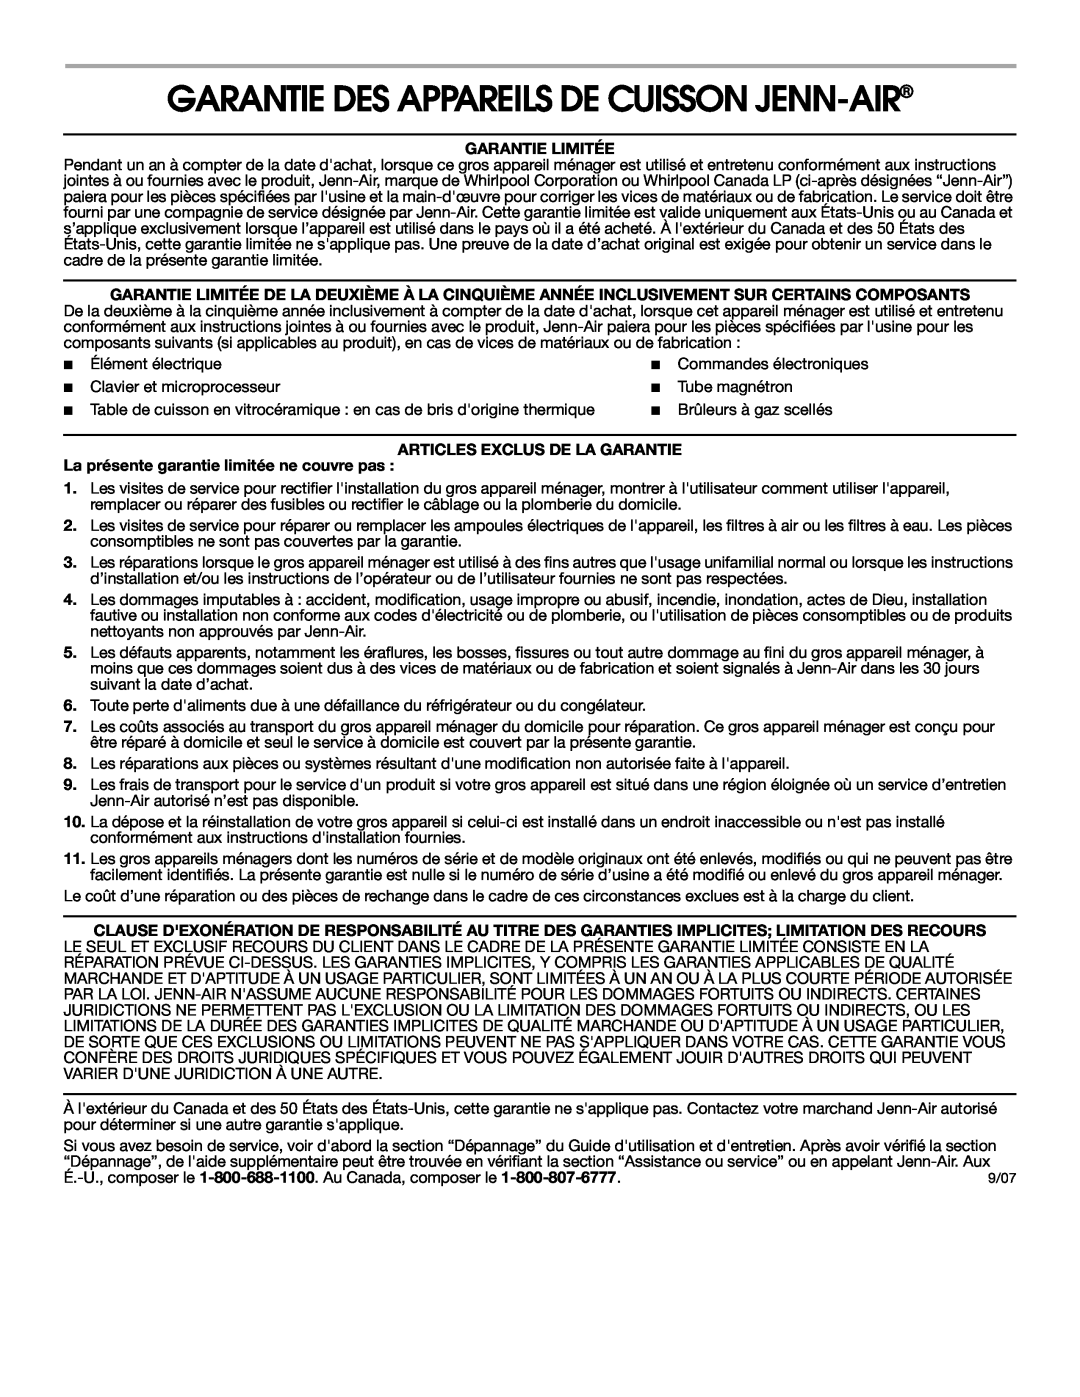 Jenn-Air 8111P535-60 Garantie Des Appareils De Cuisson Jenn-Air, Garantie Limitée, Articles Exclus De La Garantie 